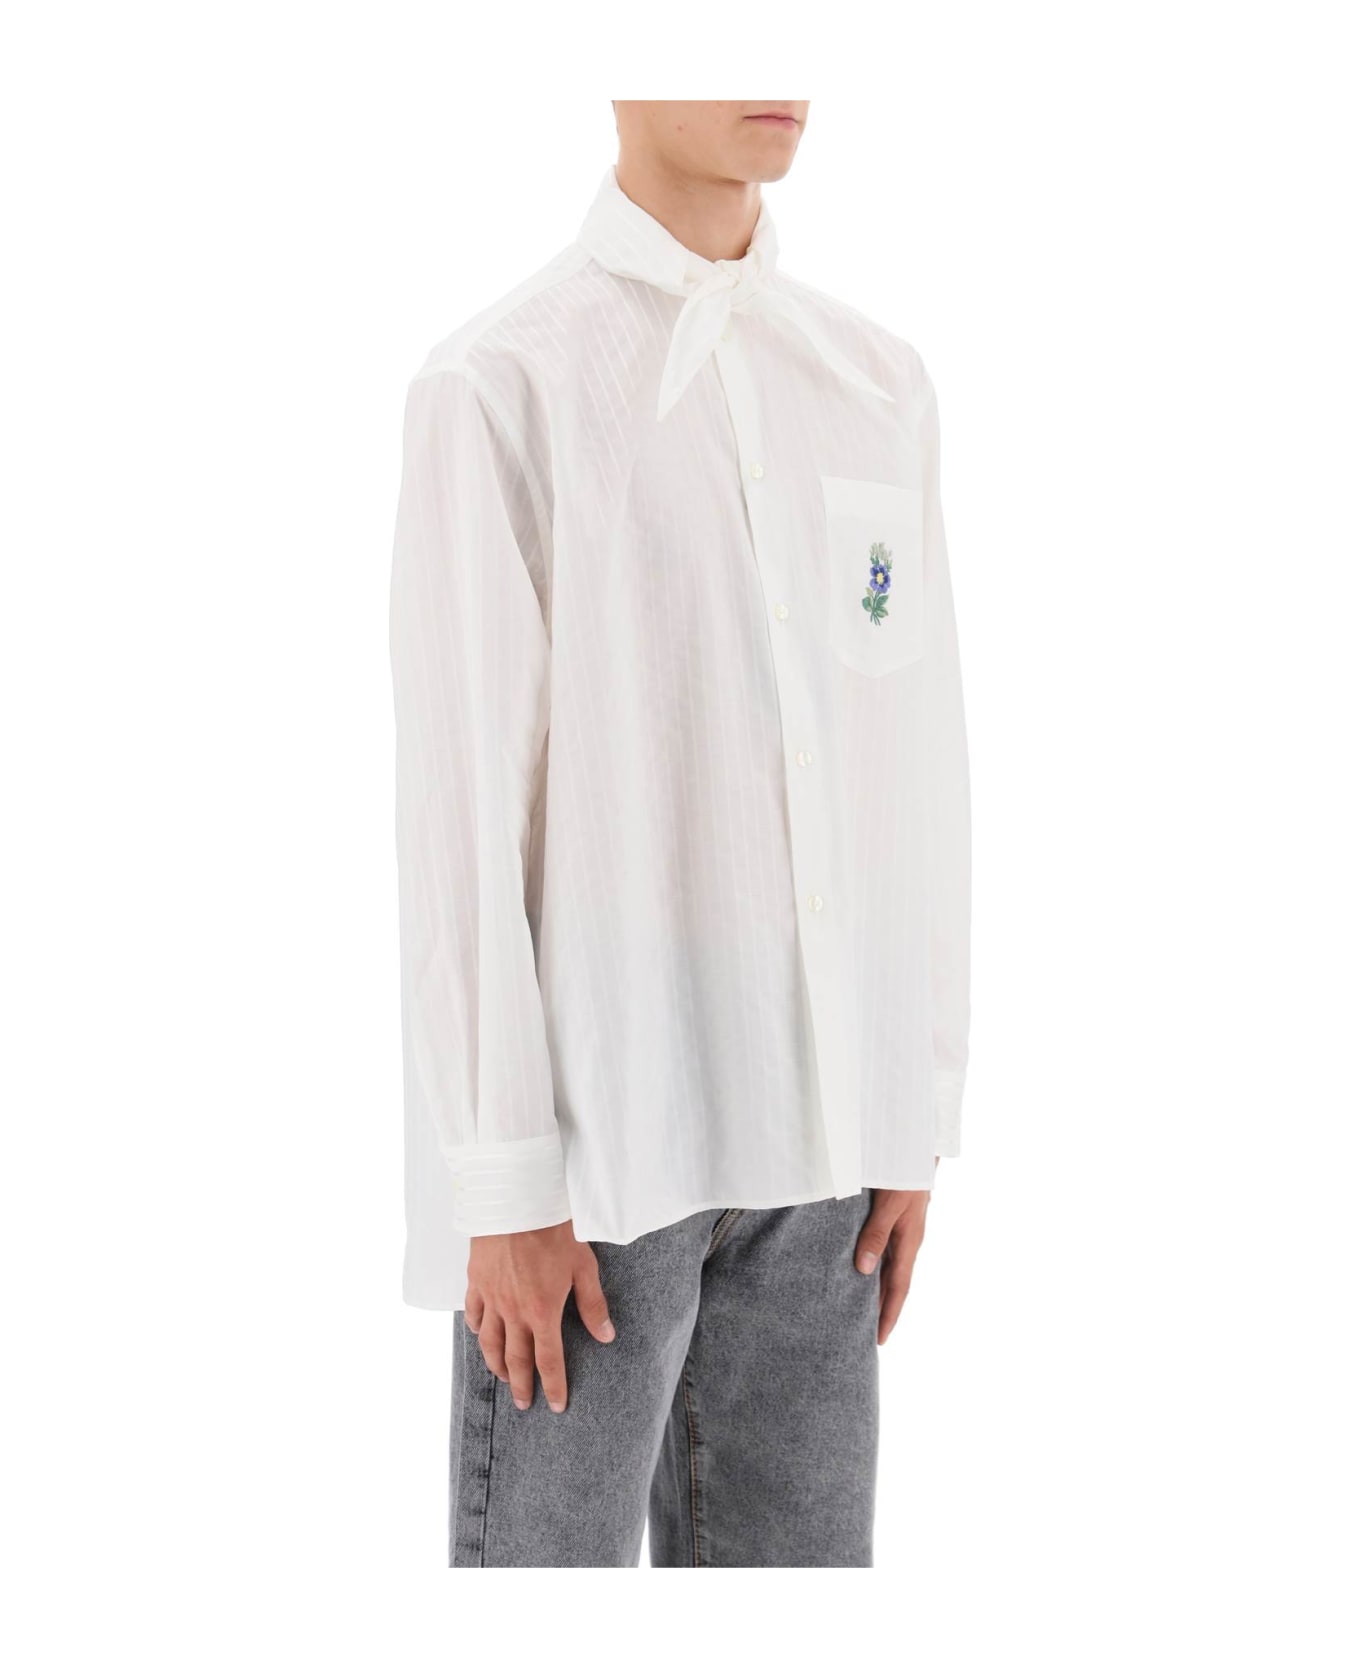 Etro Striped Shirt With Scarf Collar - WHITE (White)